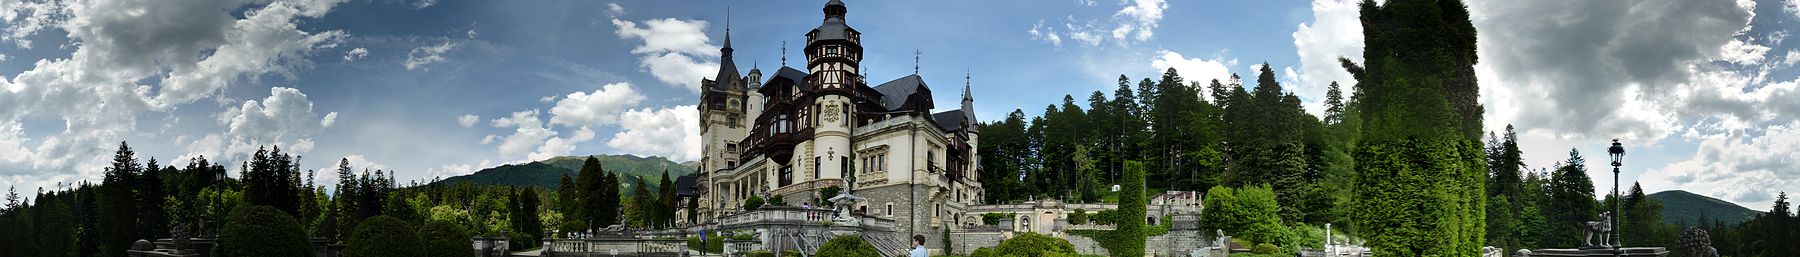 Sinaia banner Peleș Castle.jpg